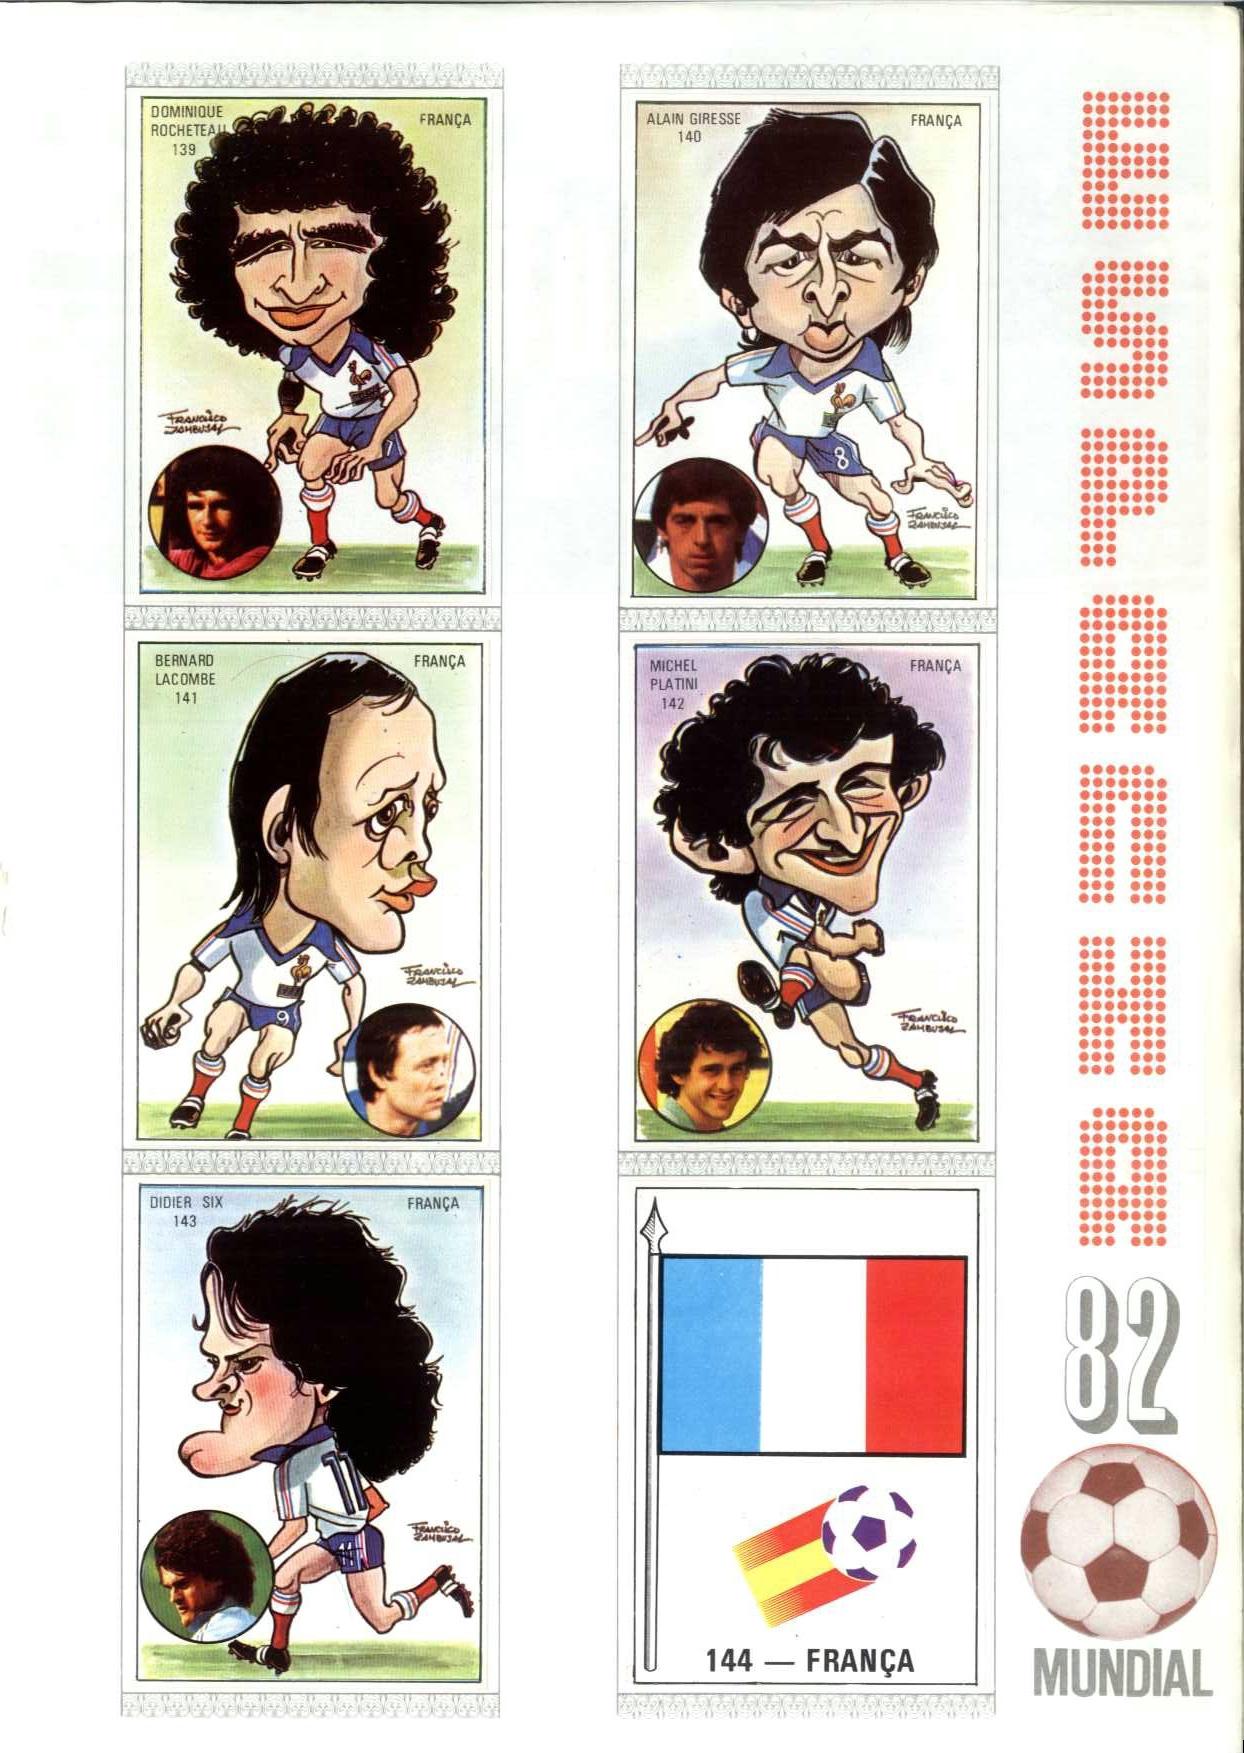 Caricaturas e Fotos, Mundial de Futebol Espanha 1982 (Mabilgráfica)-27.jpg